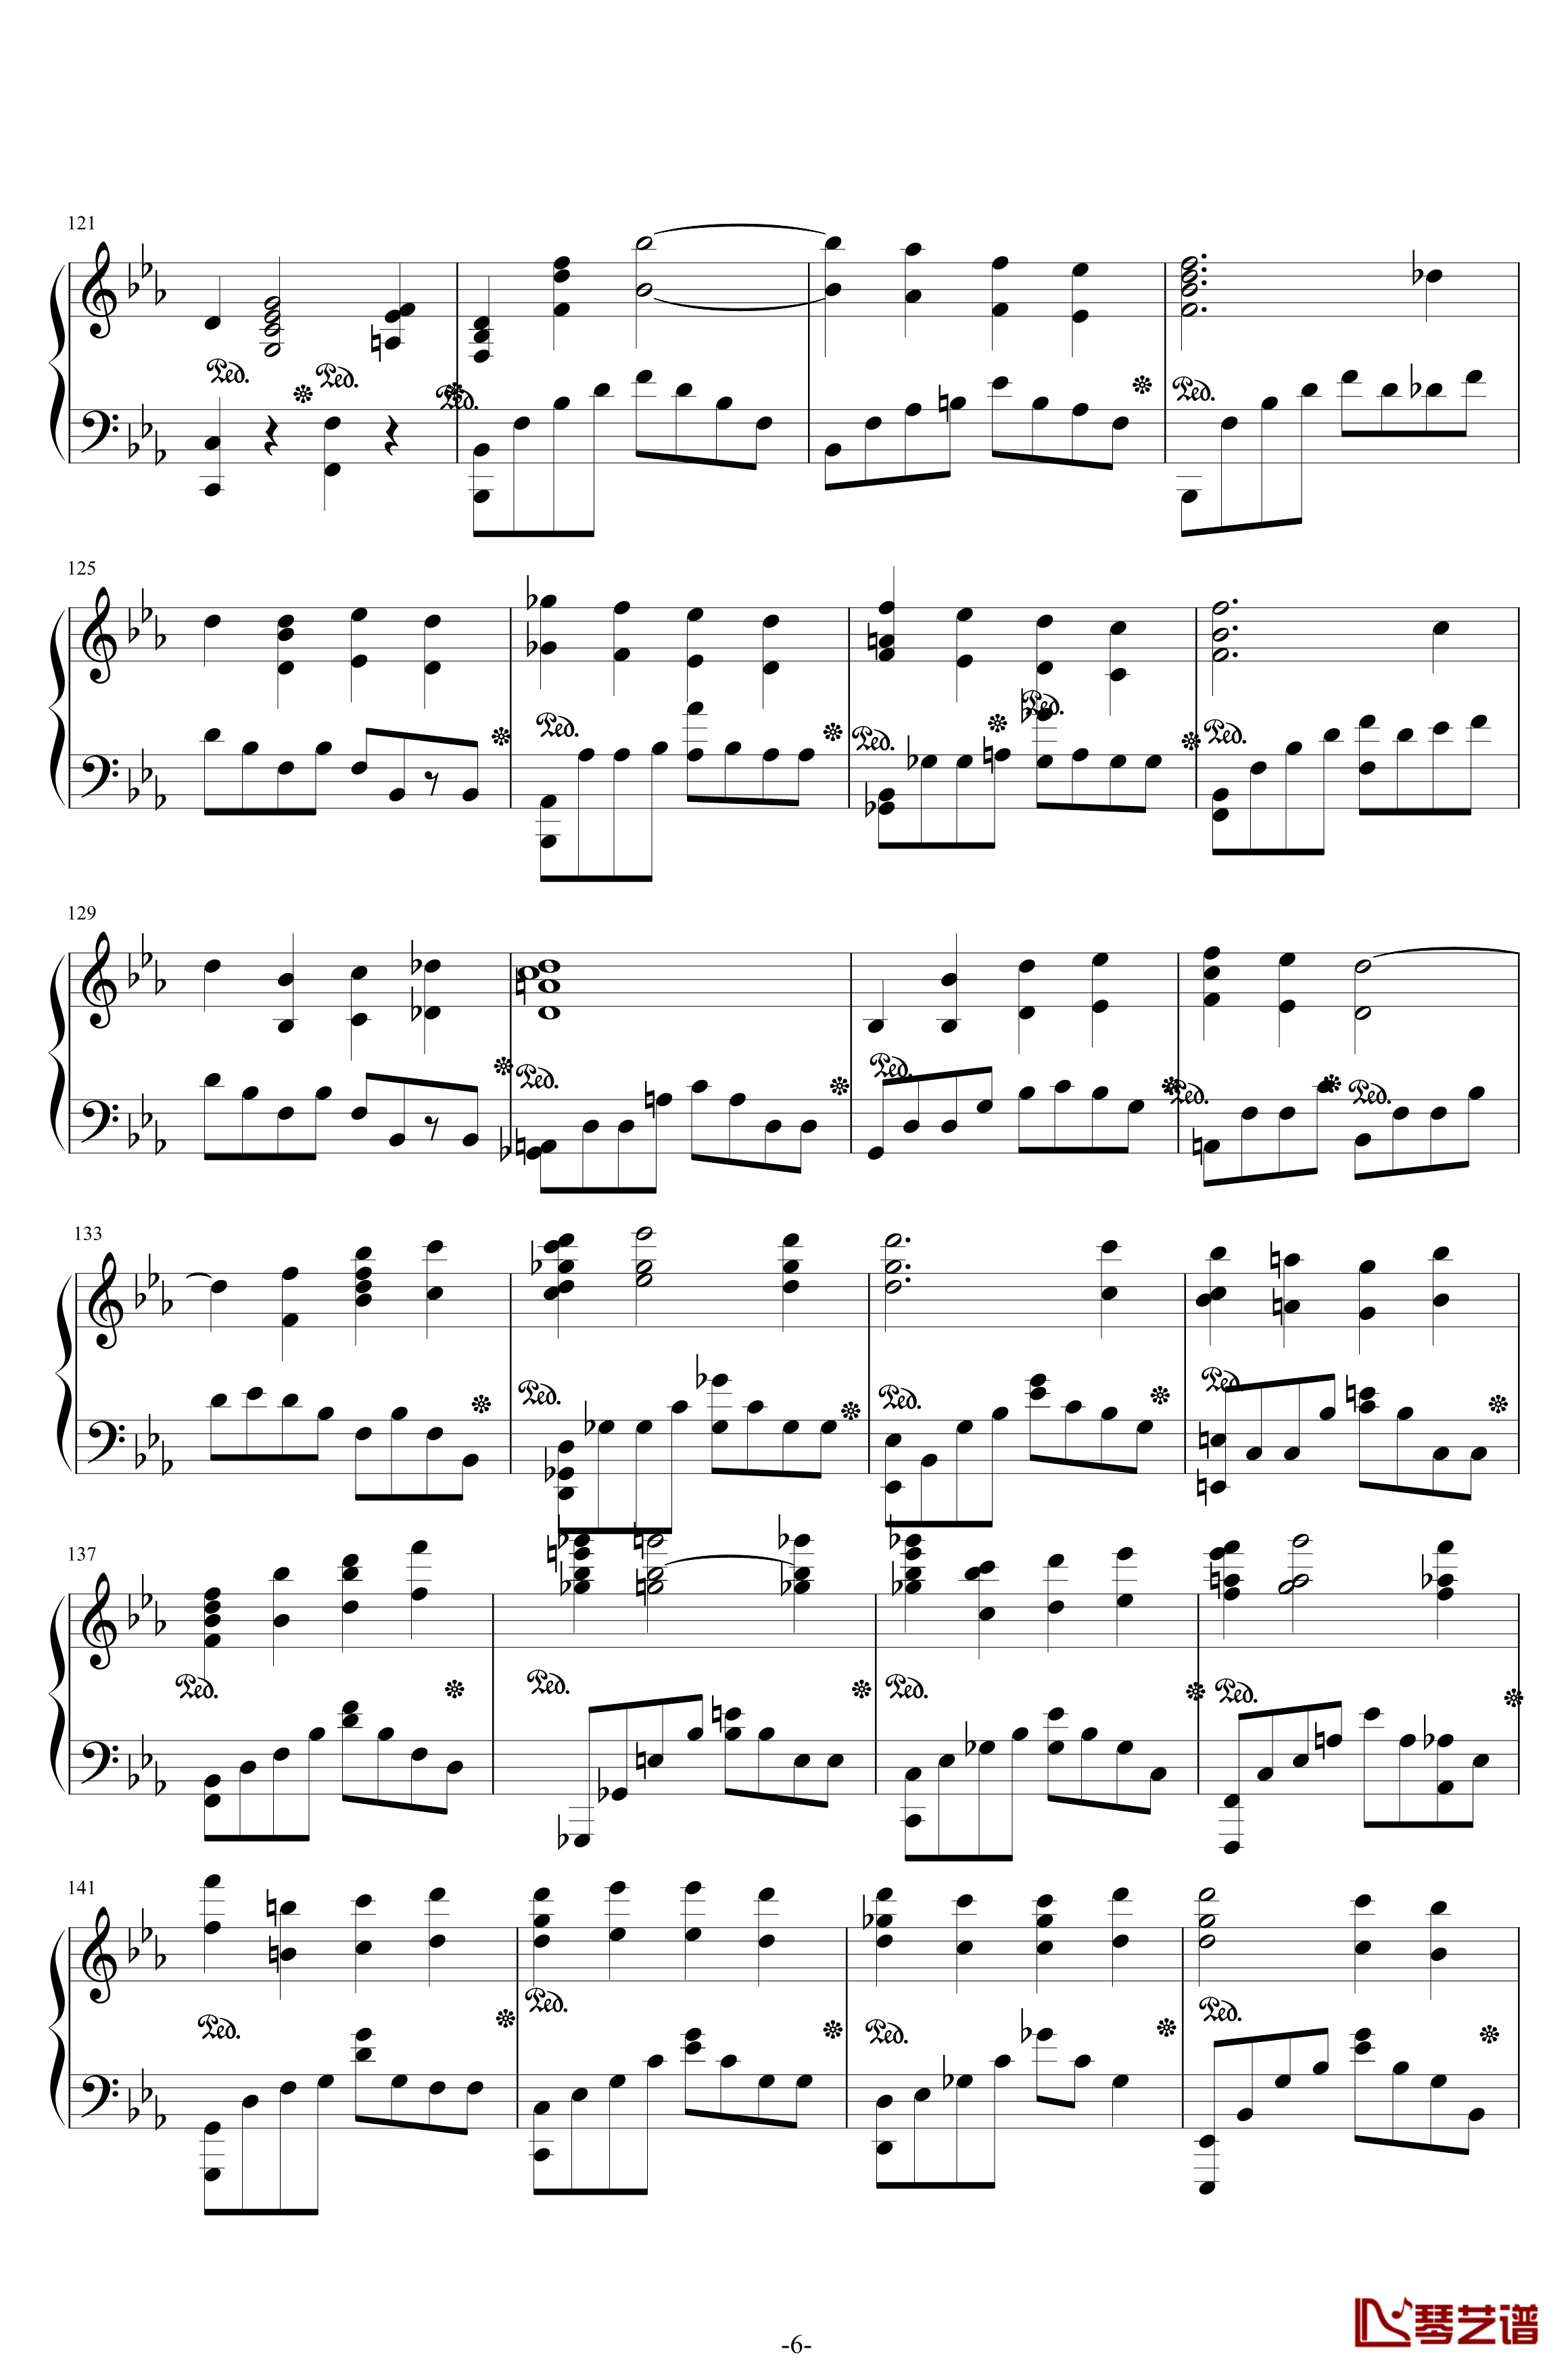 第二钢琴协奏曲钢琴谱-第三乐章独奏版-c小调-拉赫马尼若夫6